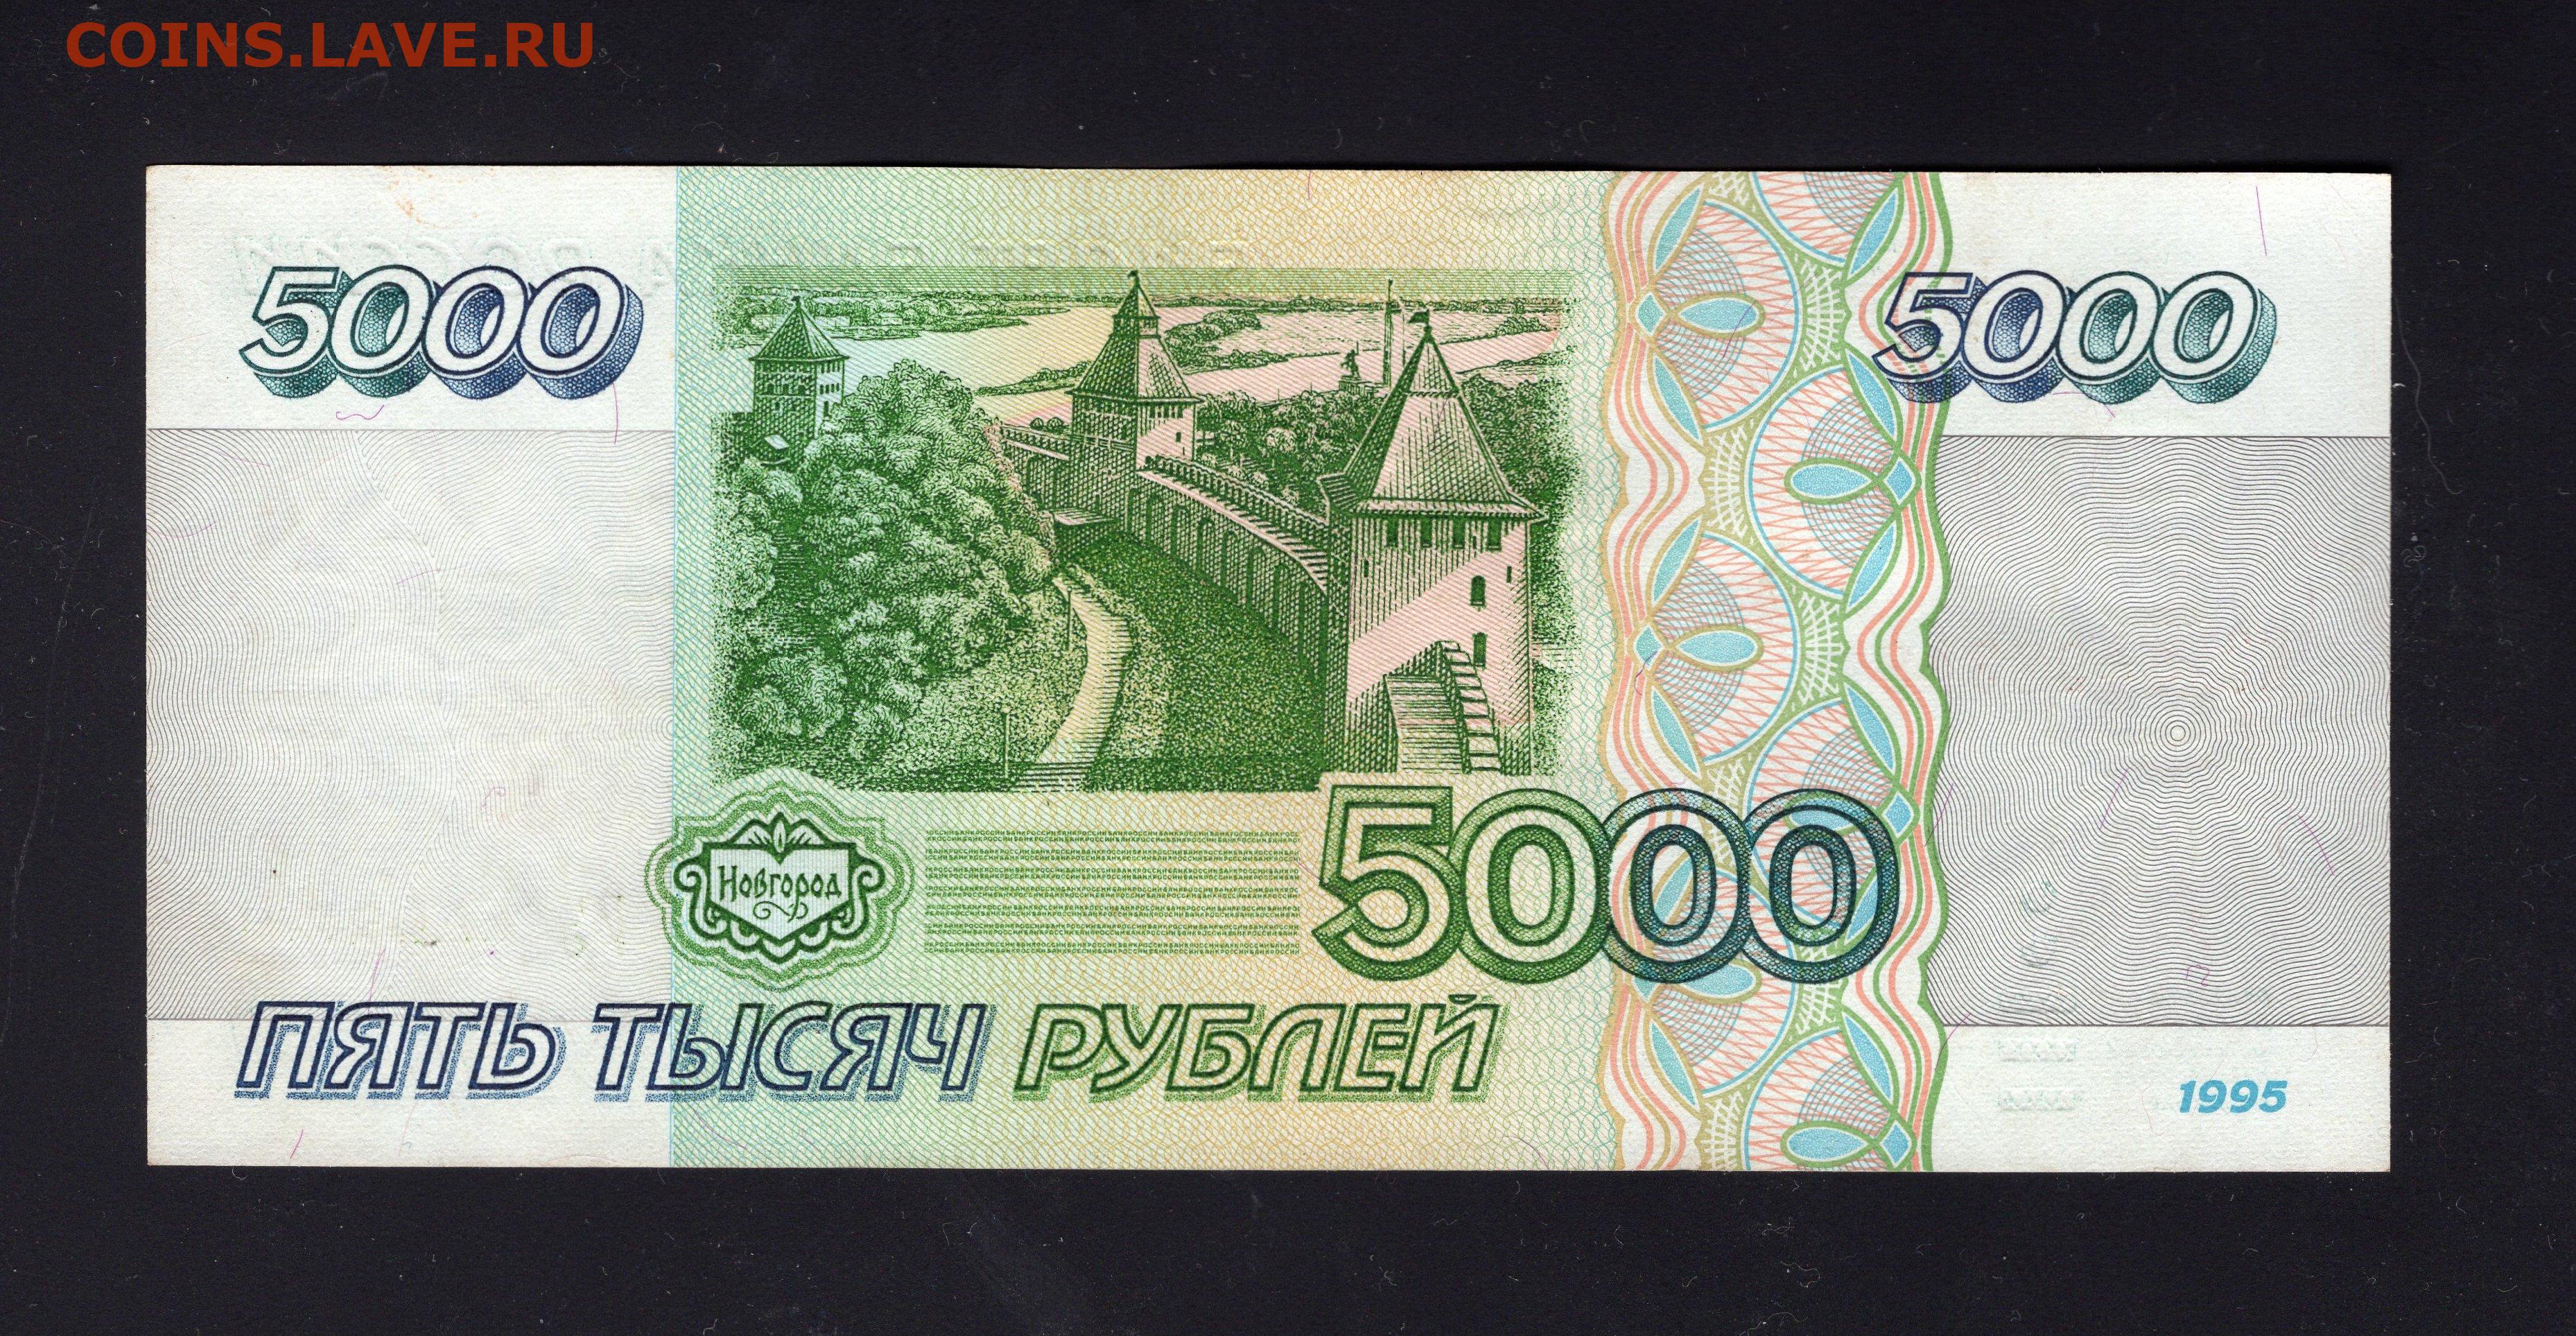 5 рублей зеленые. Пять тысяч рублей 1995. Бона 5000 рублей 1995. 5 Тысяч рублей 1995. Пять тысяч рублей 1995 года.